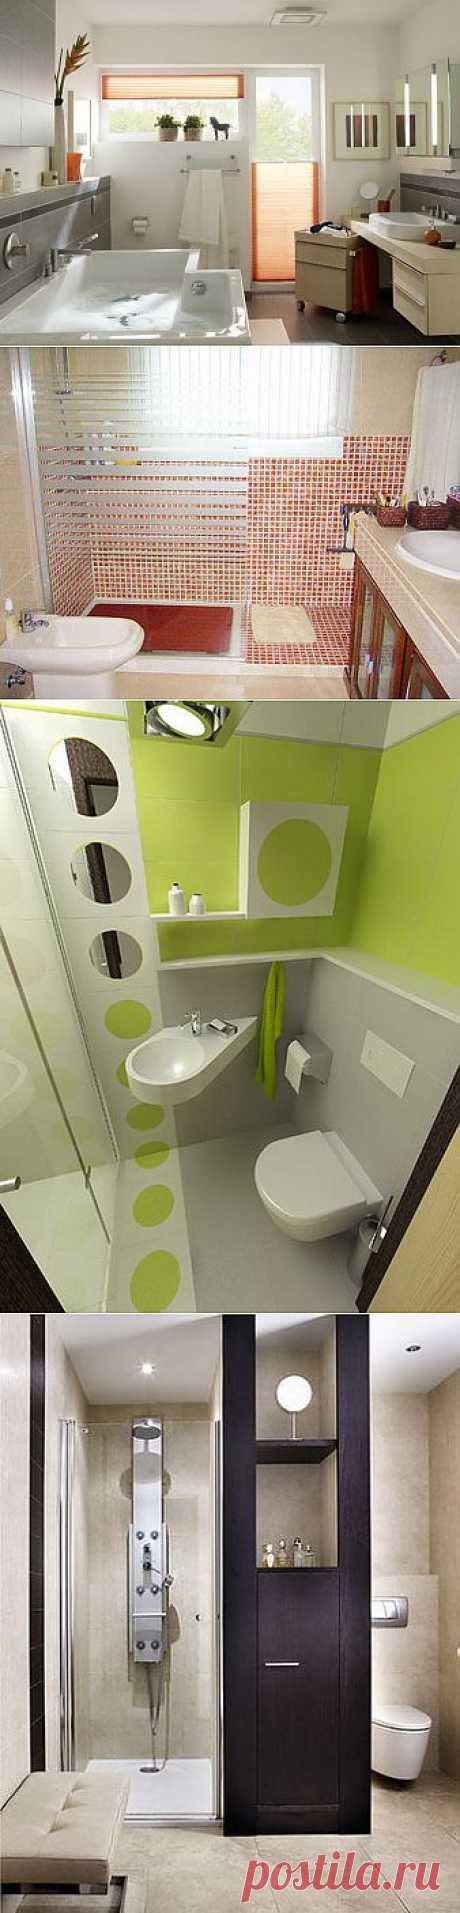 Секреты ремонта в ванной комнате - Фото - Инструкции по ремонту